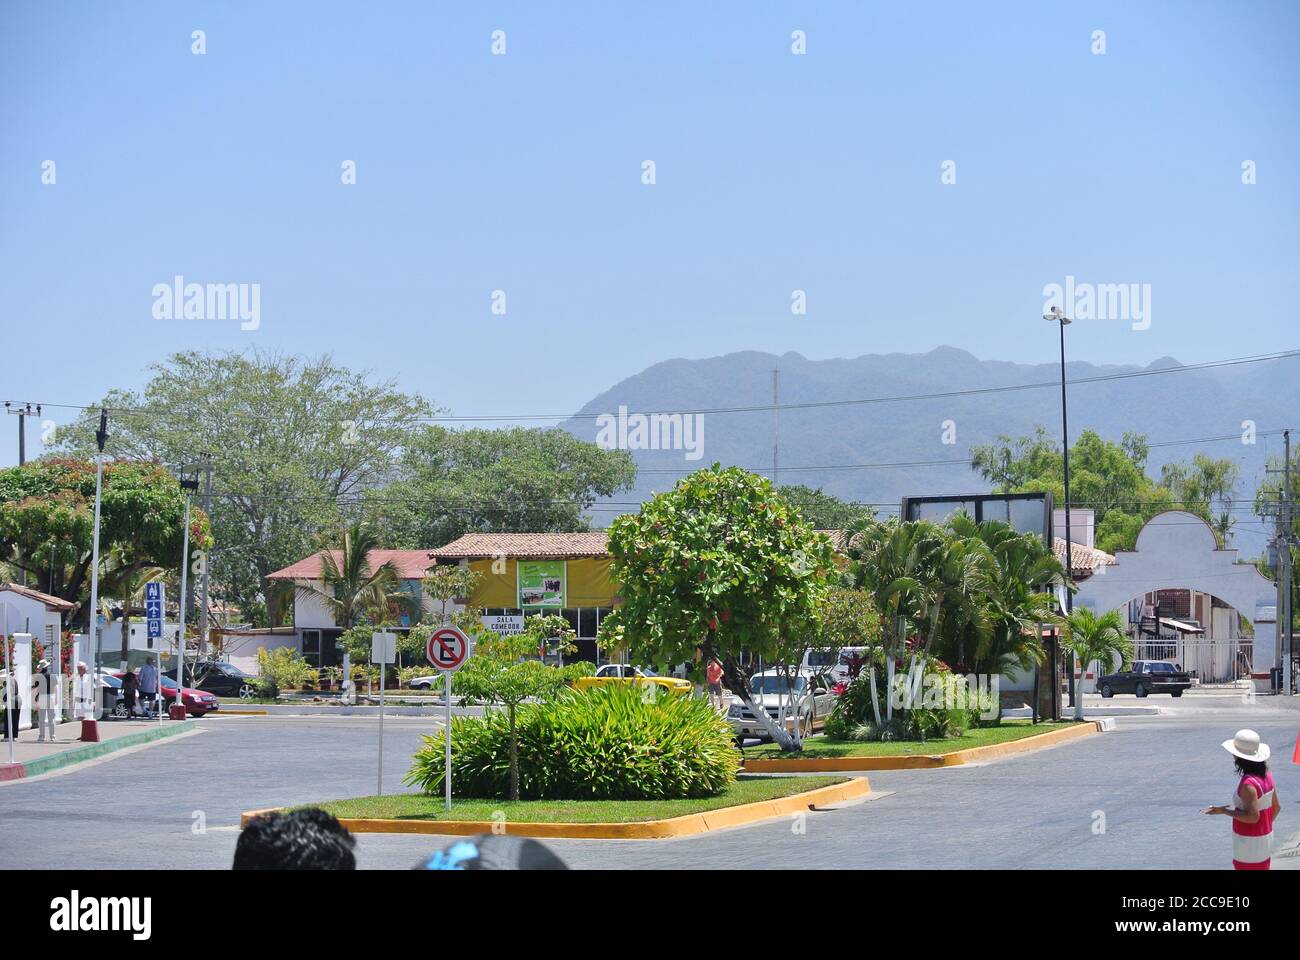 Puerto Vallarta México,19 de abril de 2013,no hay señal de estacionamiento en la carretera en méxico, los vehículos están estacionados frente a la señal, los turistas están disfrutando de su día d Foto de stock